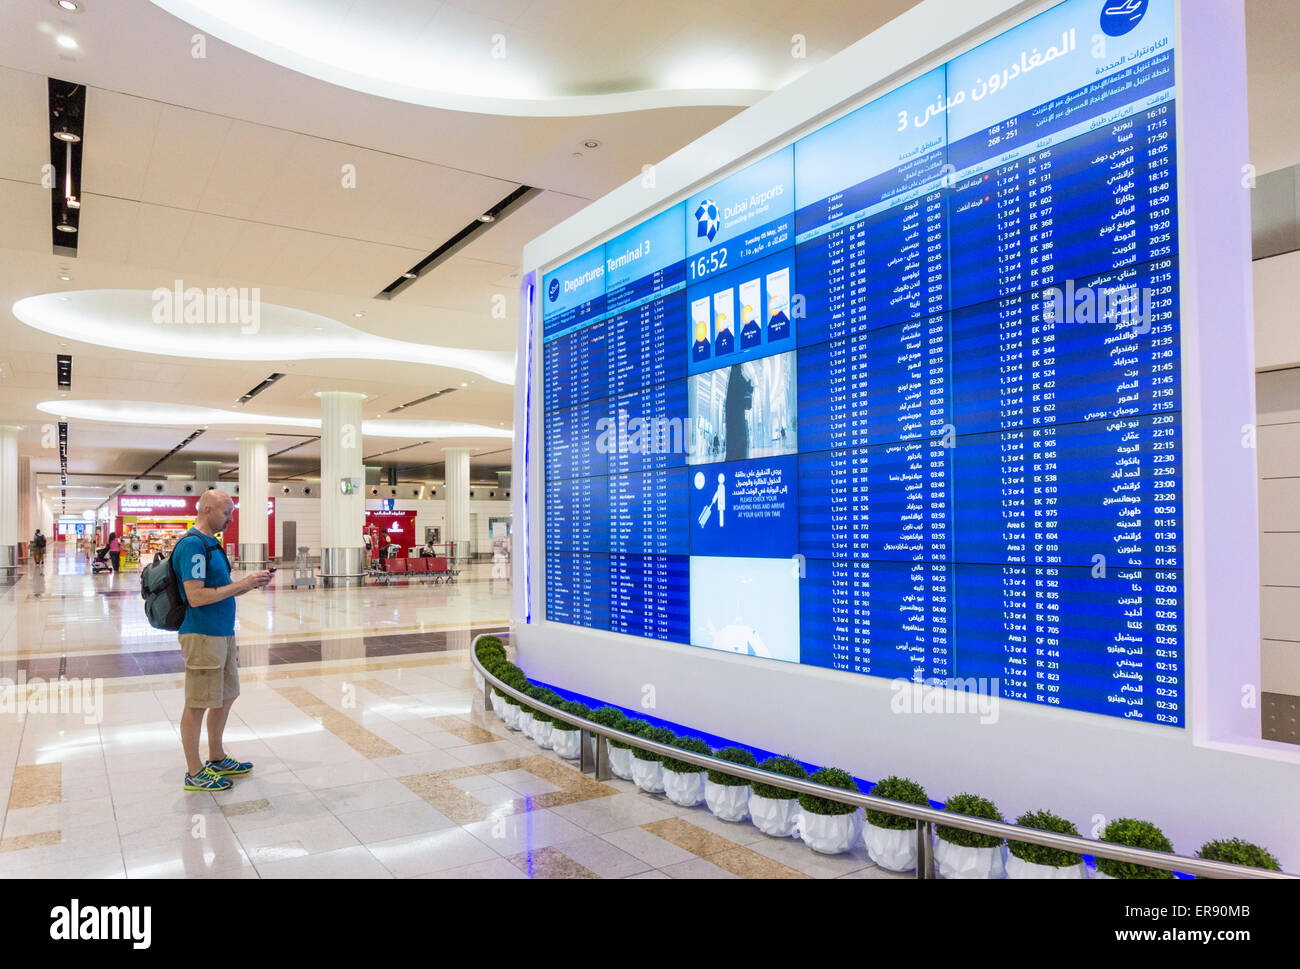 Flughafen-Abfahrtstafel am internationalen Flughafen Dubai, Dubai City, Vereinigte Arabische Emirate, Vereinigte Arabische Emirate, Naher Osten Stockfoto